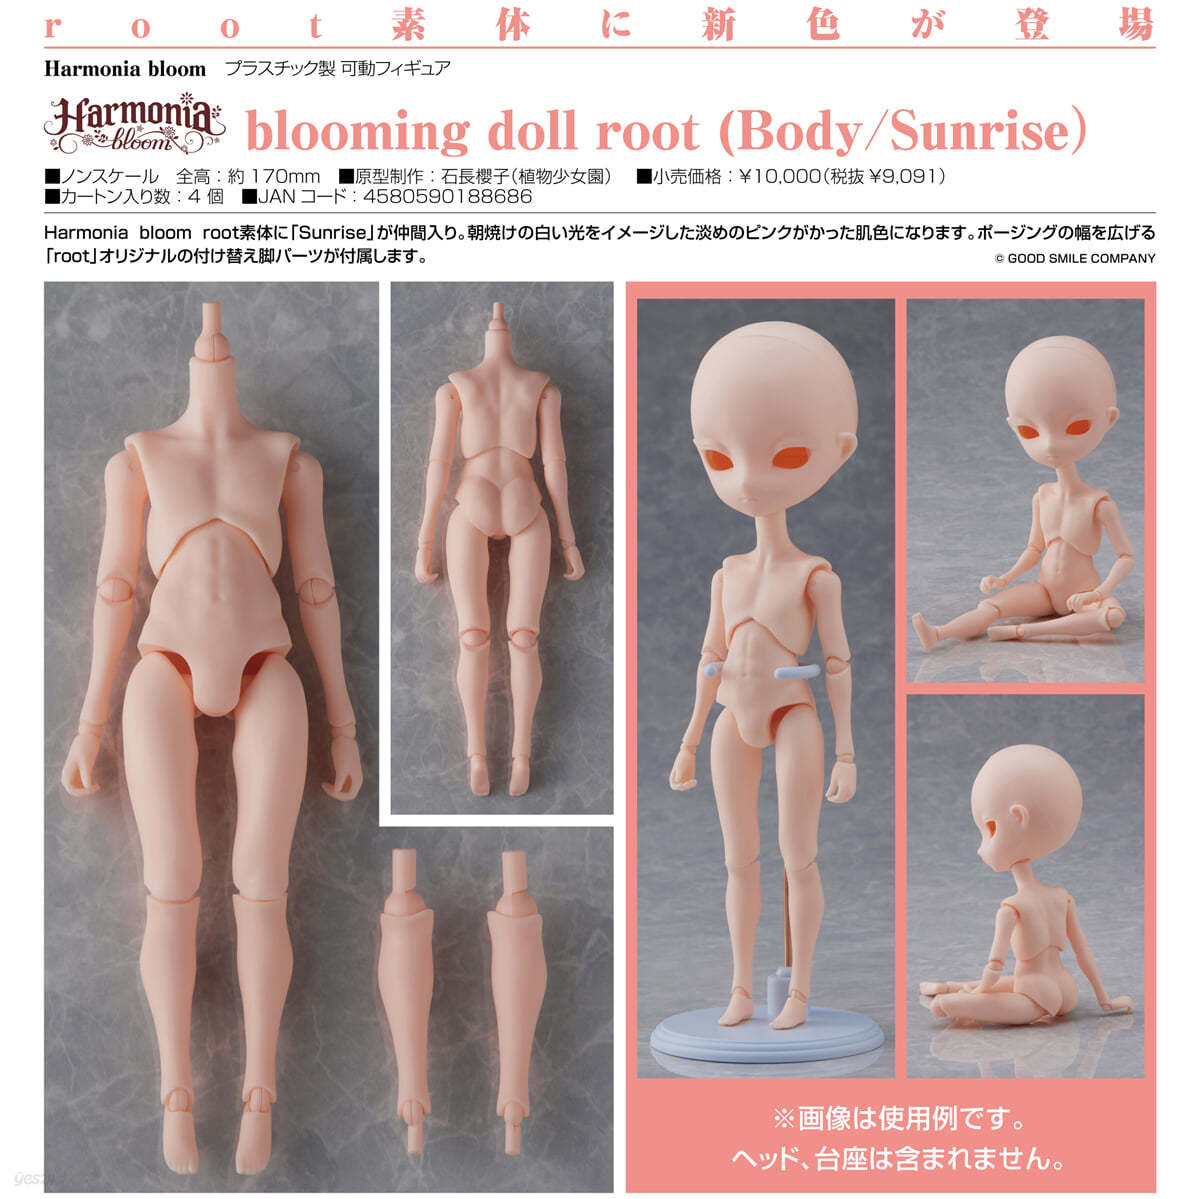 (예약도서) Harmonia bloom blooming doll root (Body/Sunrise)